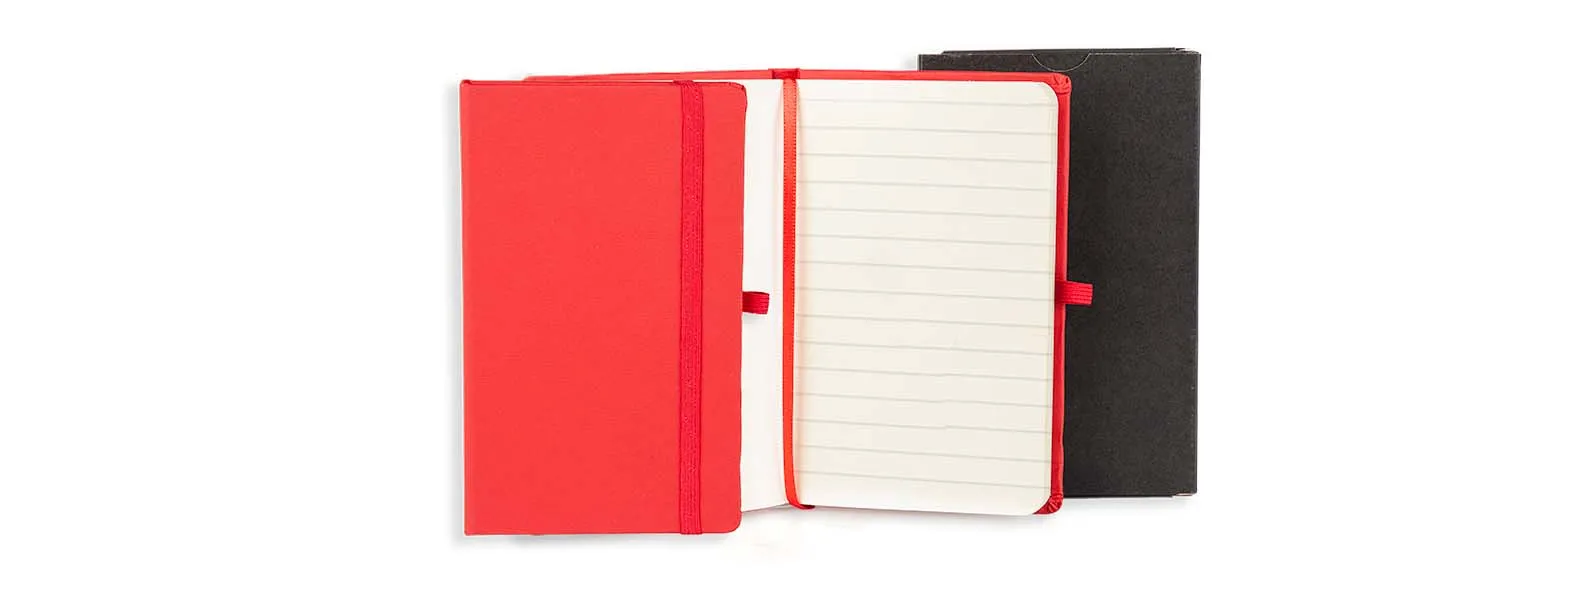 Caderno para anotações vermelho com capa dura. Conta com 80 folhas pautadas, marcador de página, porta caneta e elástico para fechamento. Gramatura da folha de 70 g/m2.